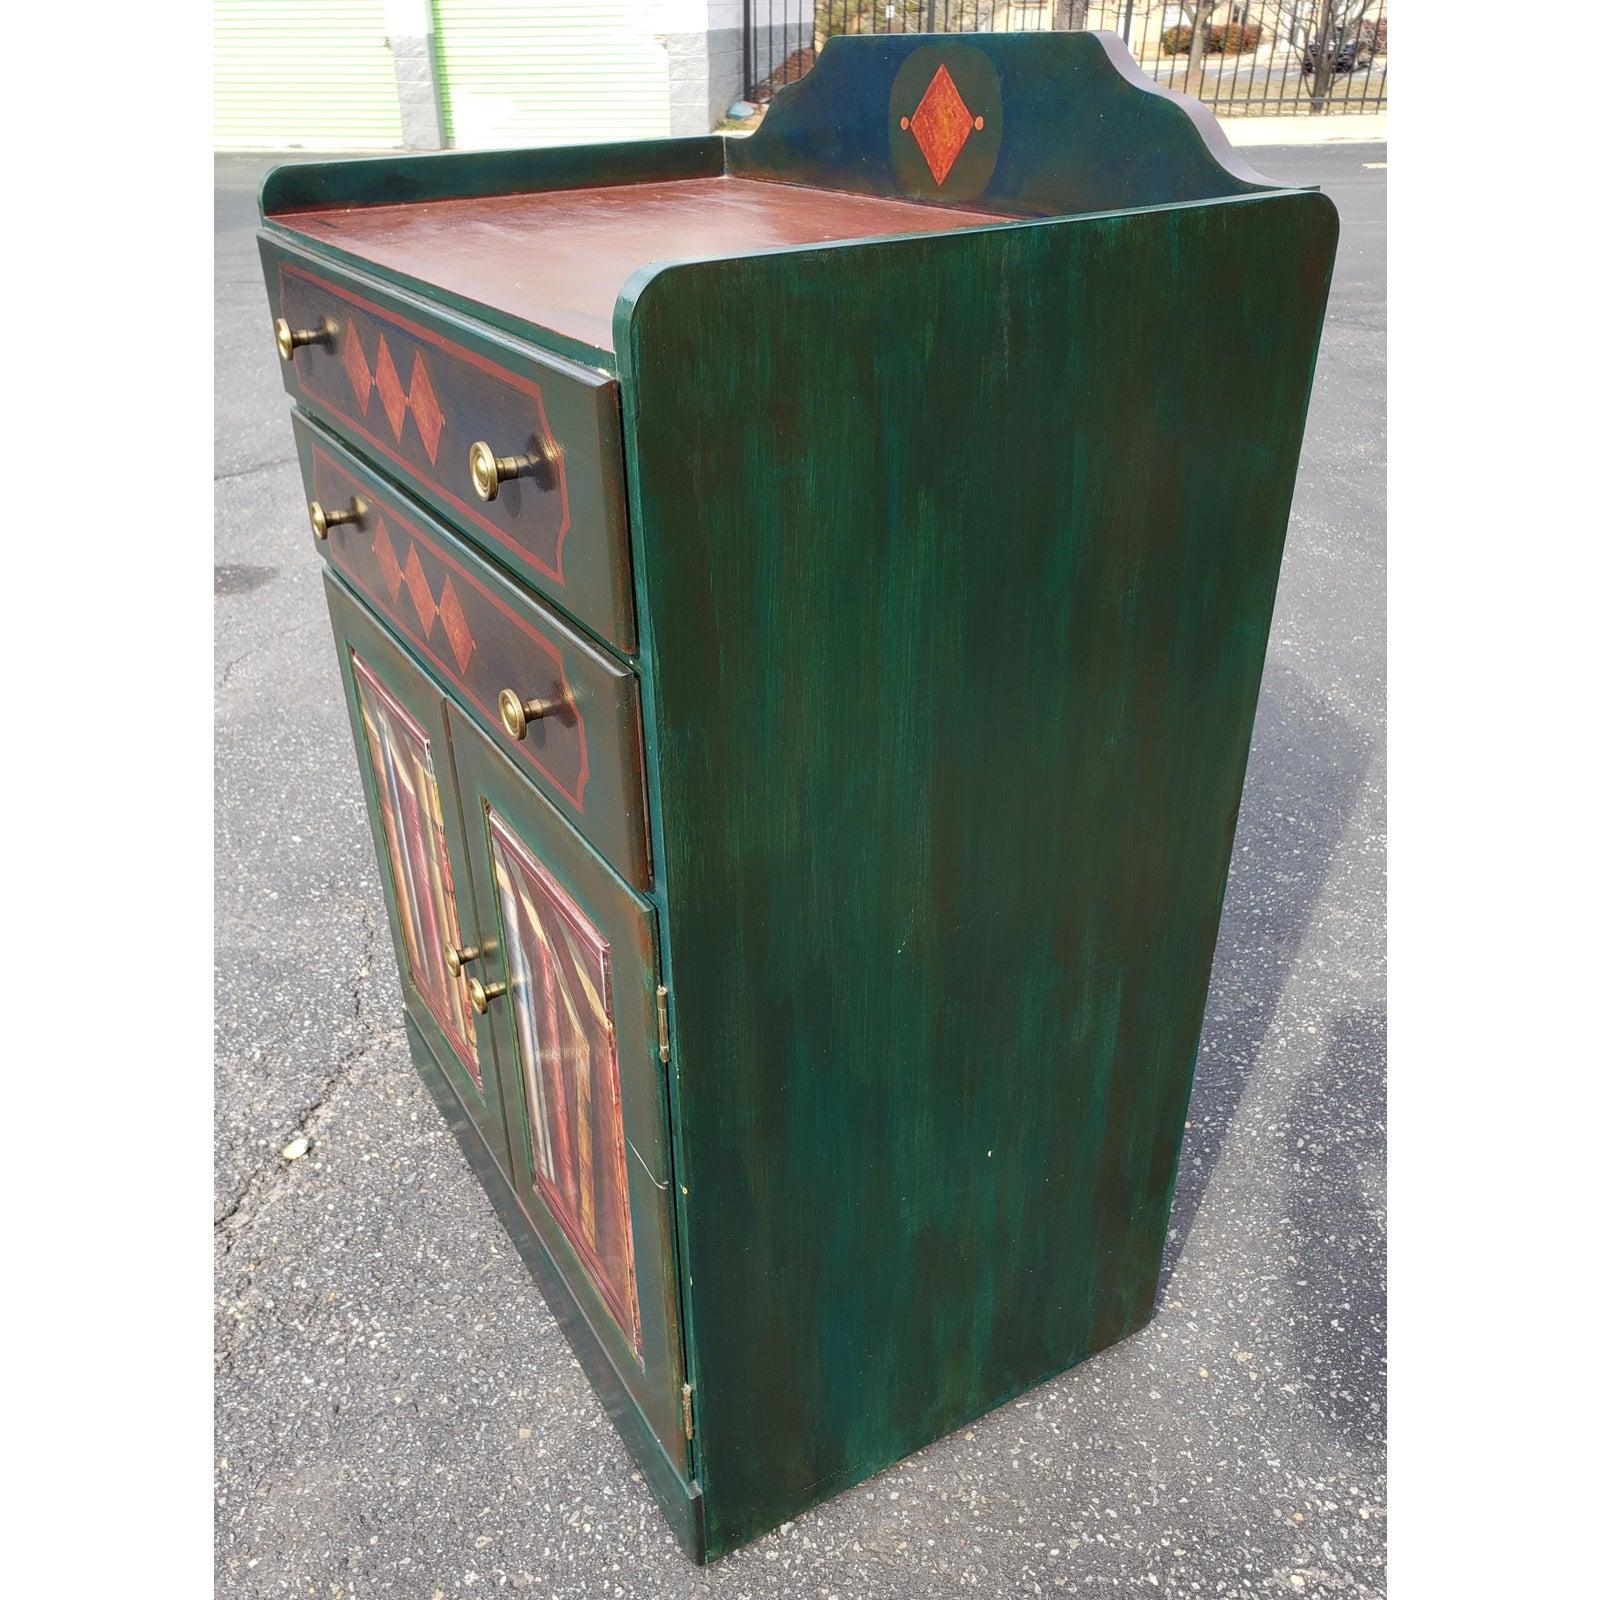 Handbemalter Vintage-Schrank von S J Bailey and Sons Mascraft für unfertige Möbel. 
Der Schrank verfügt über zwei große Schubladen mit Schwalbenschwanzauszügen und einen großen Stauraum unter den Schubladen. Der Schrank ist aus hellem Kiefernholz